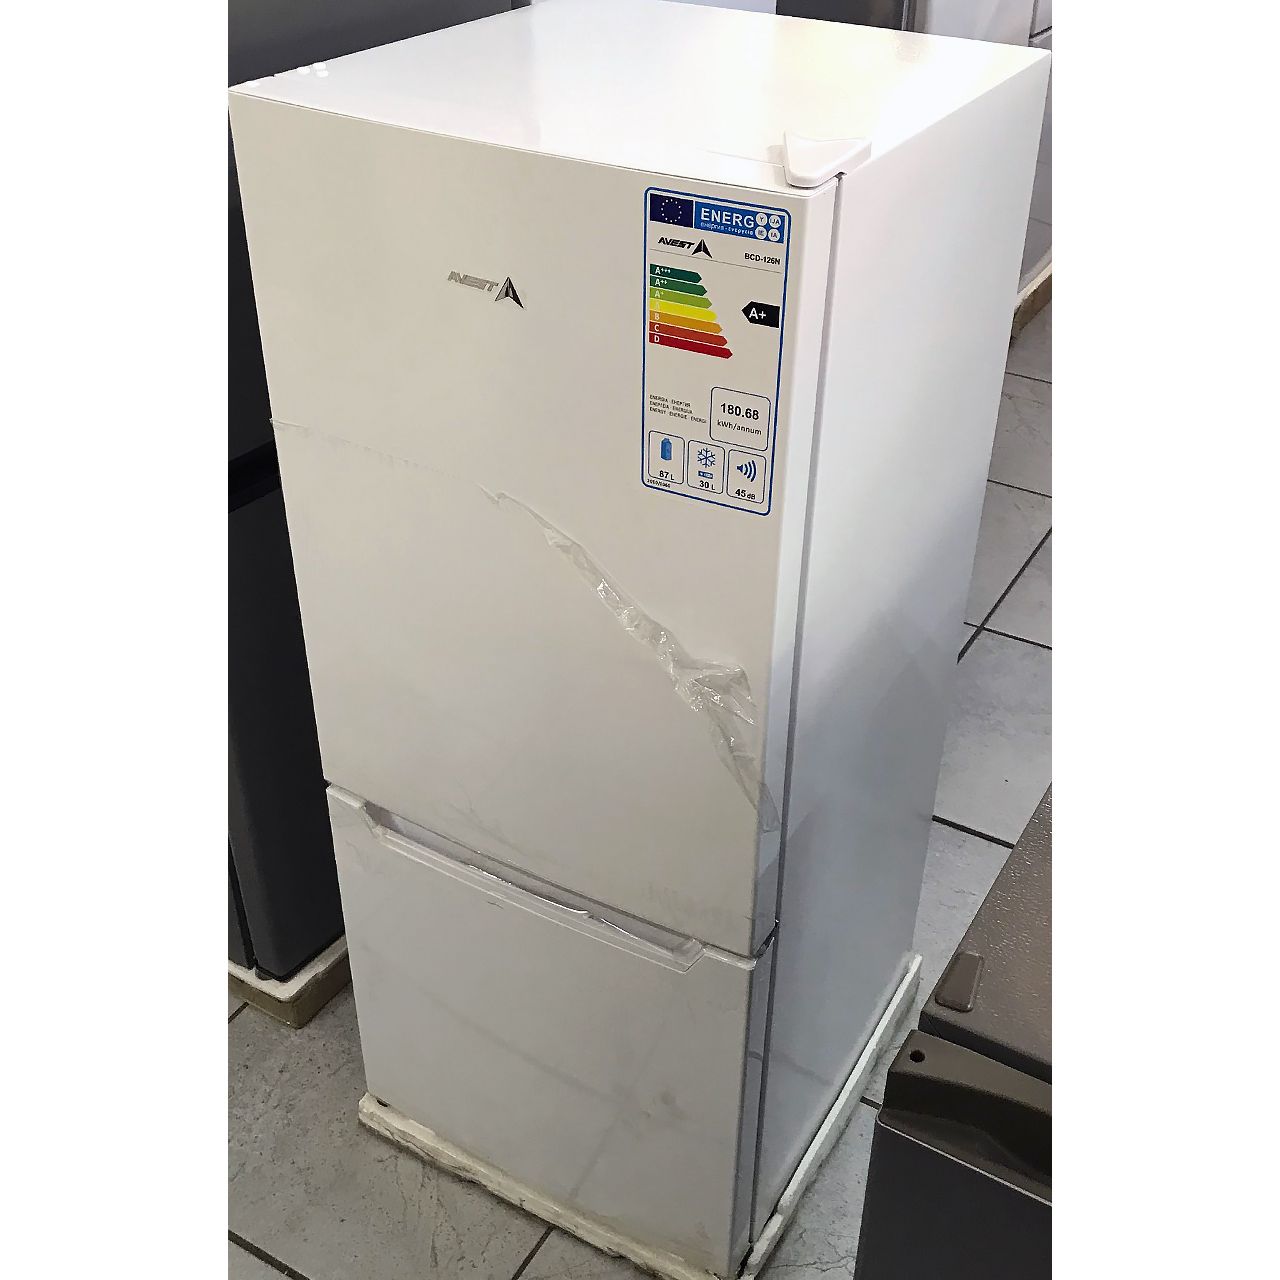 Холодильник двухкамерный Avest 117 литров